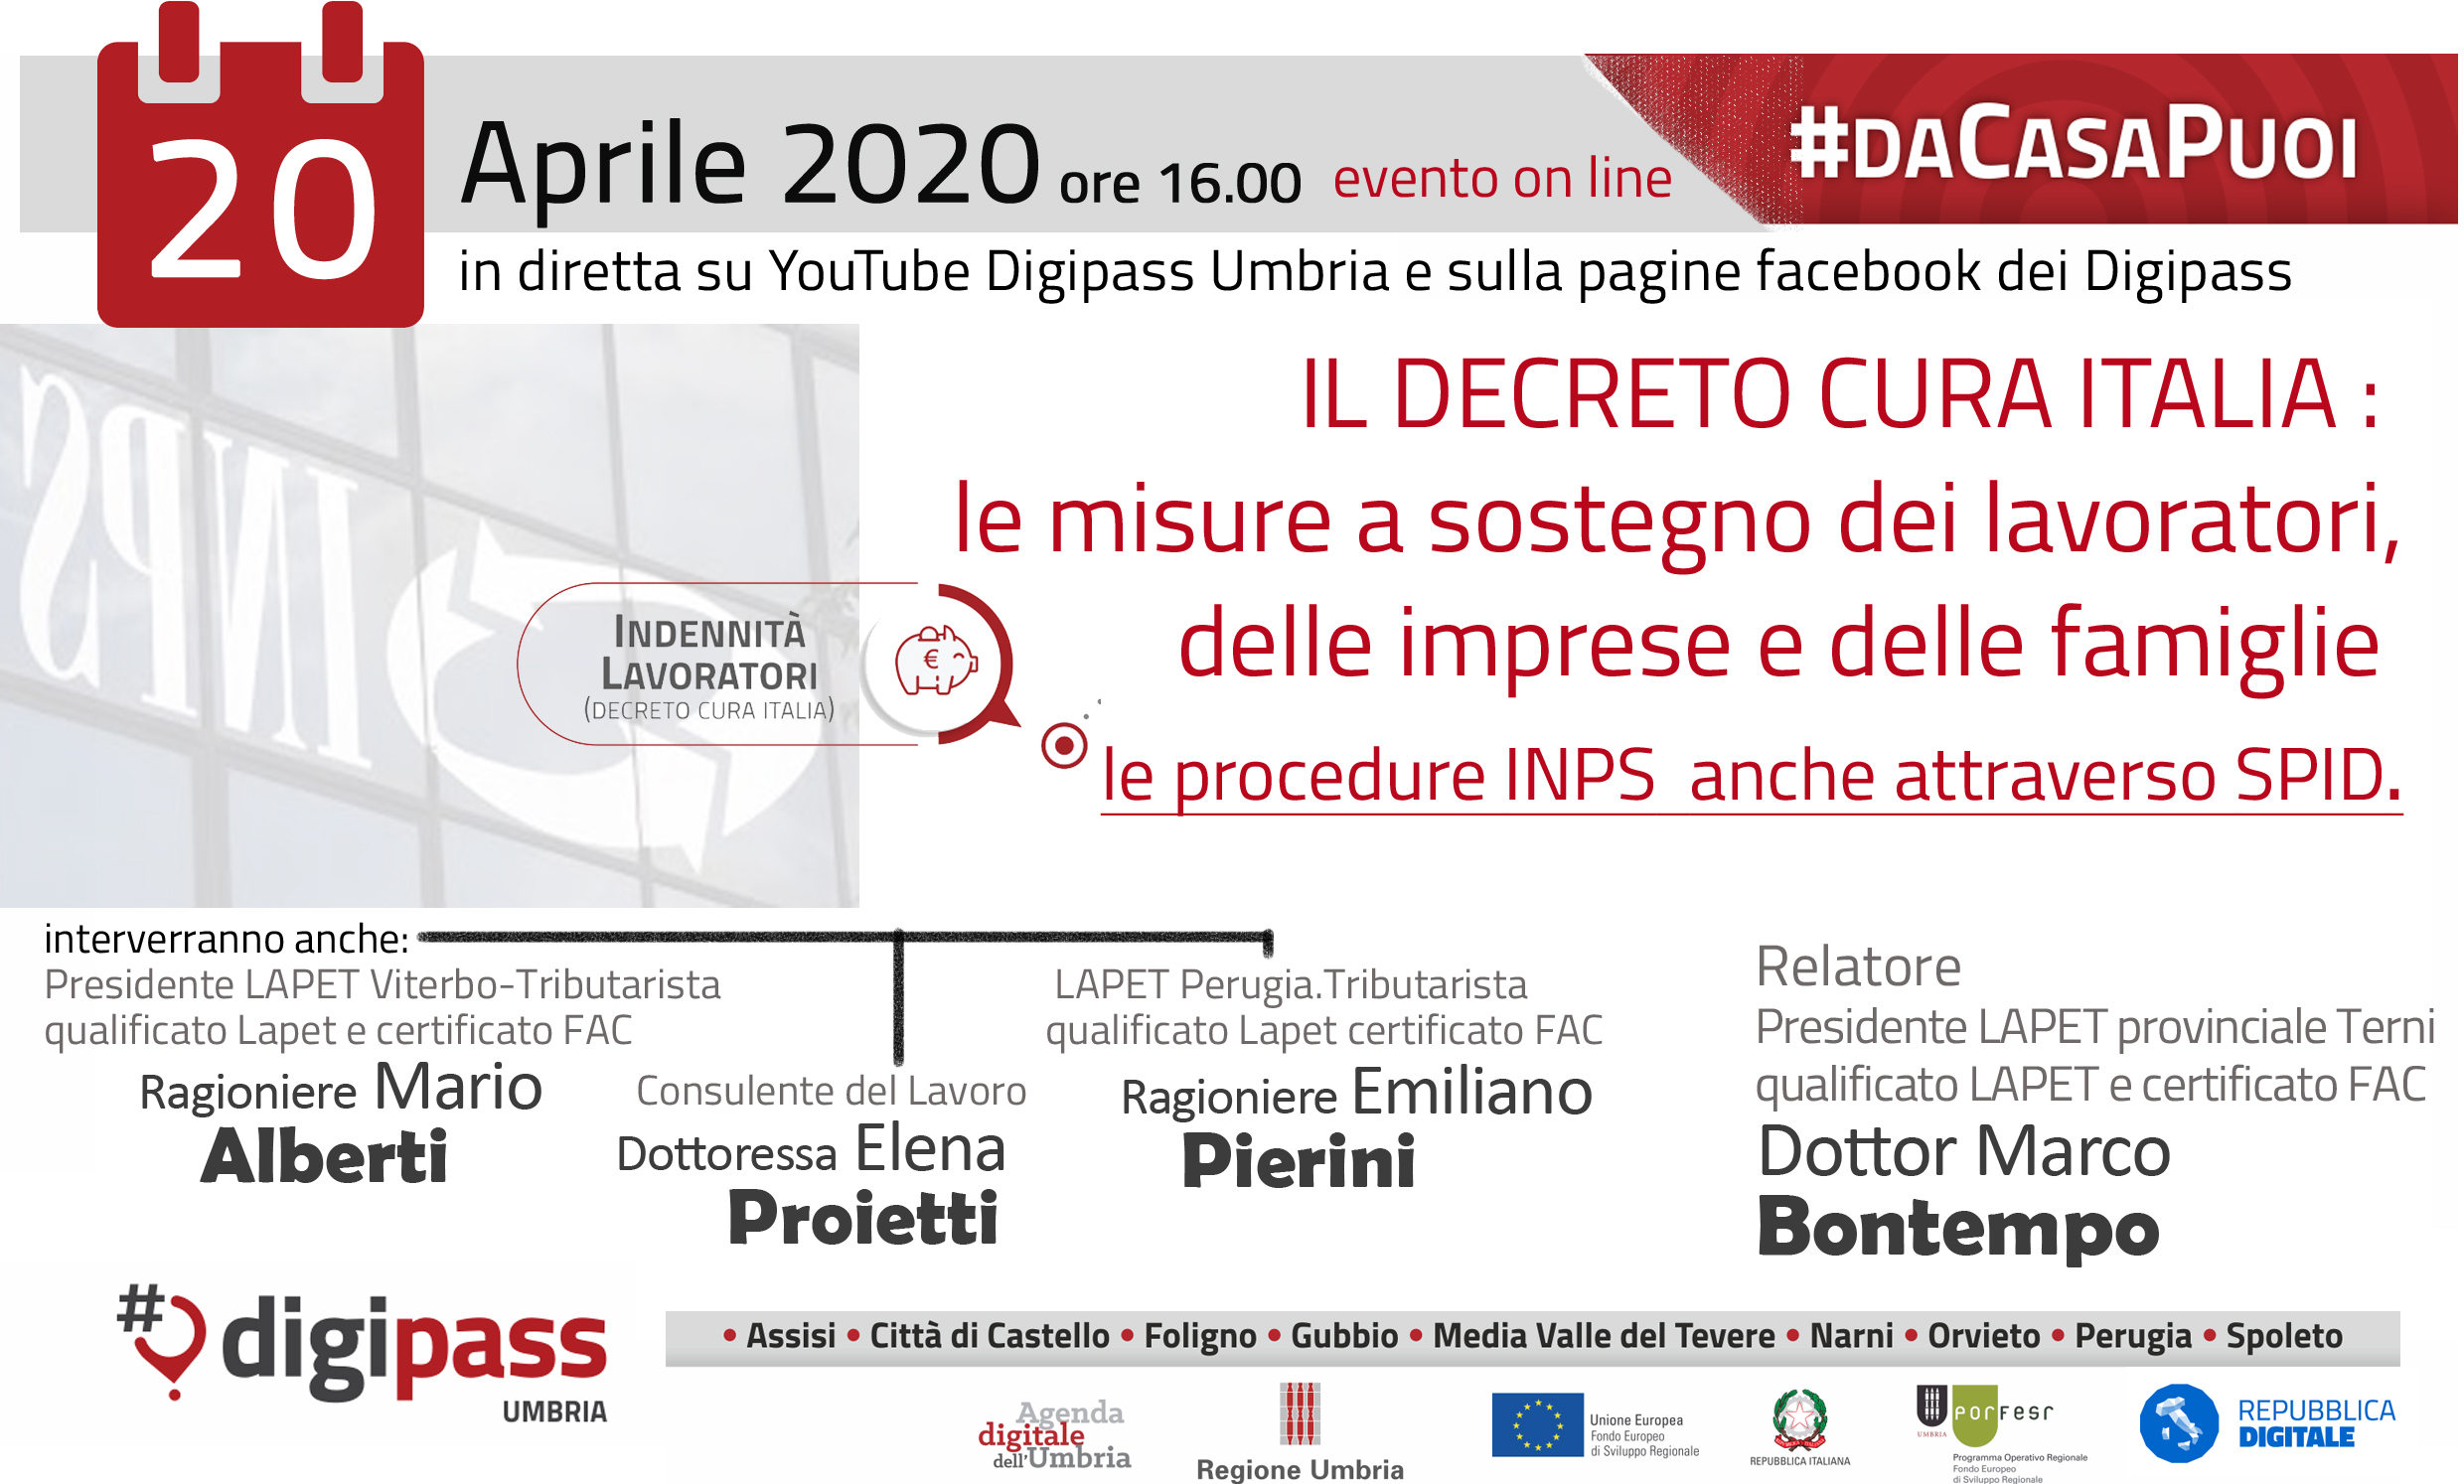 #daCasaPuoi. Evento online organizzato dai DigiPASS Umbria